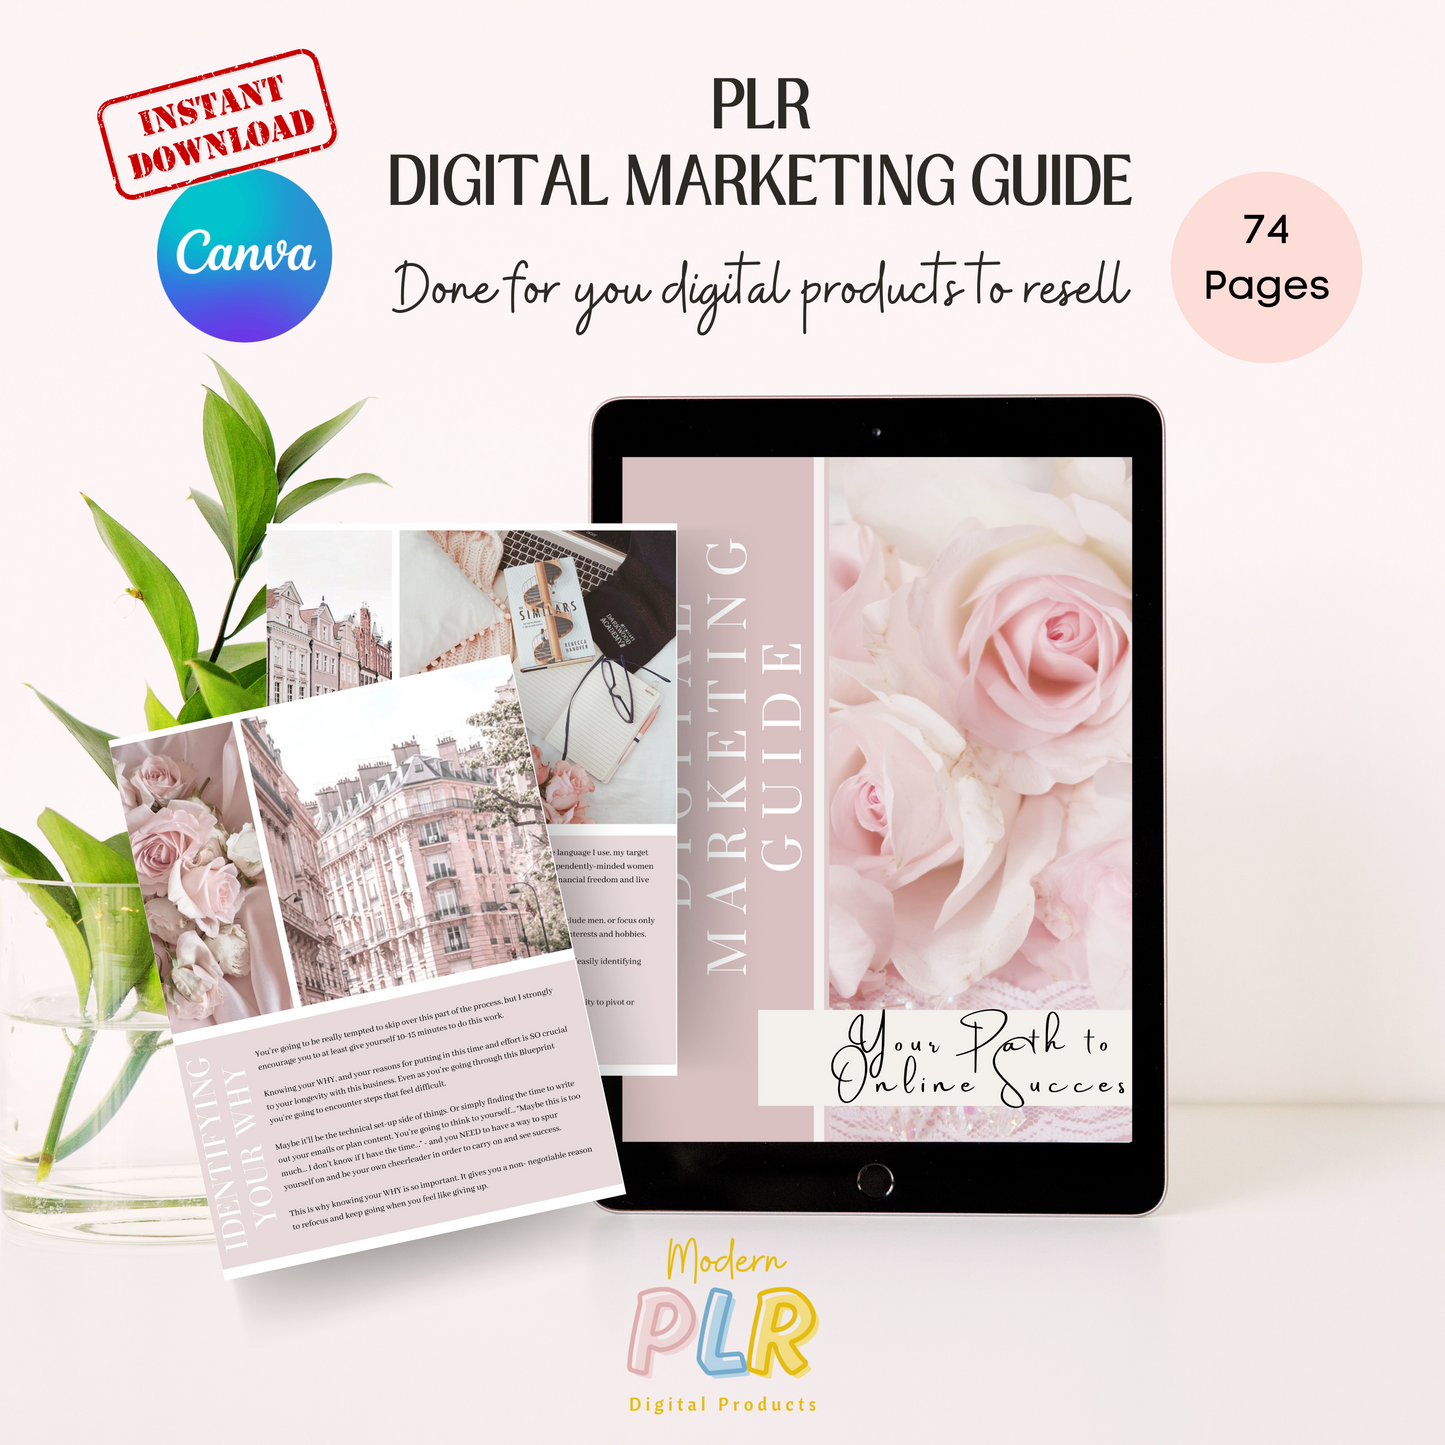 Digital Marketing Ebook PLR/MRR